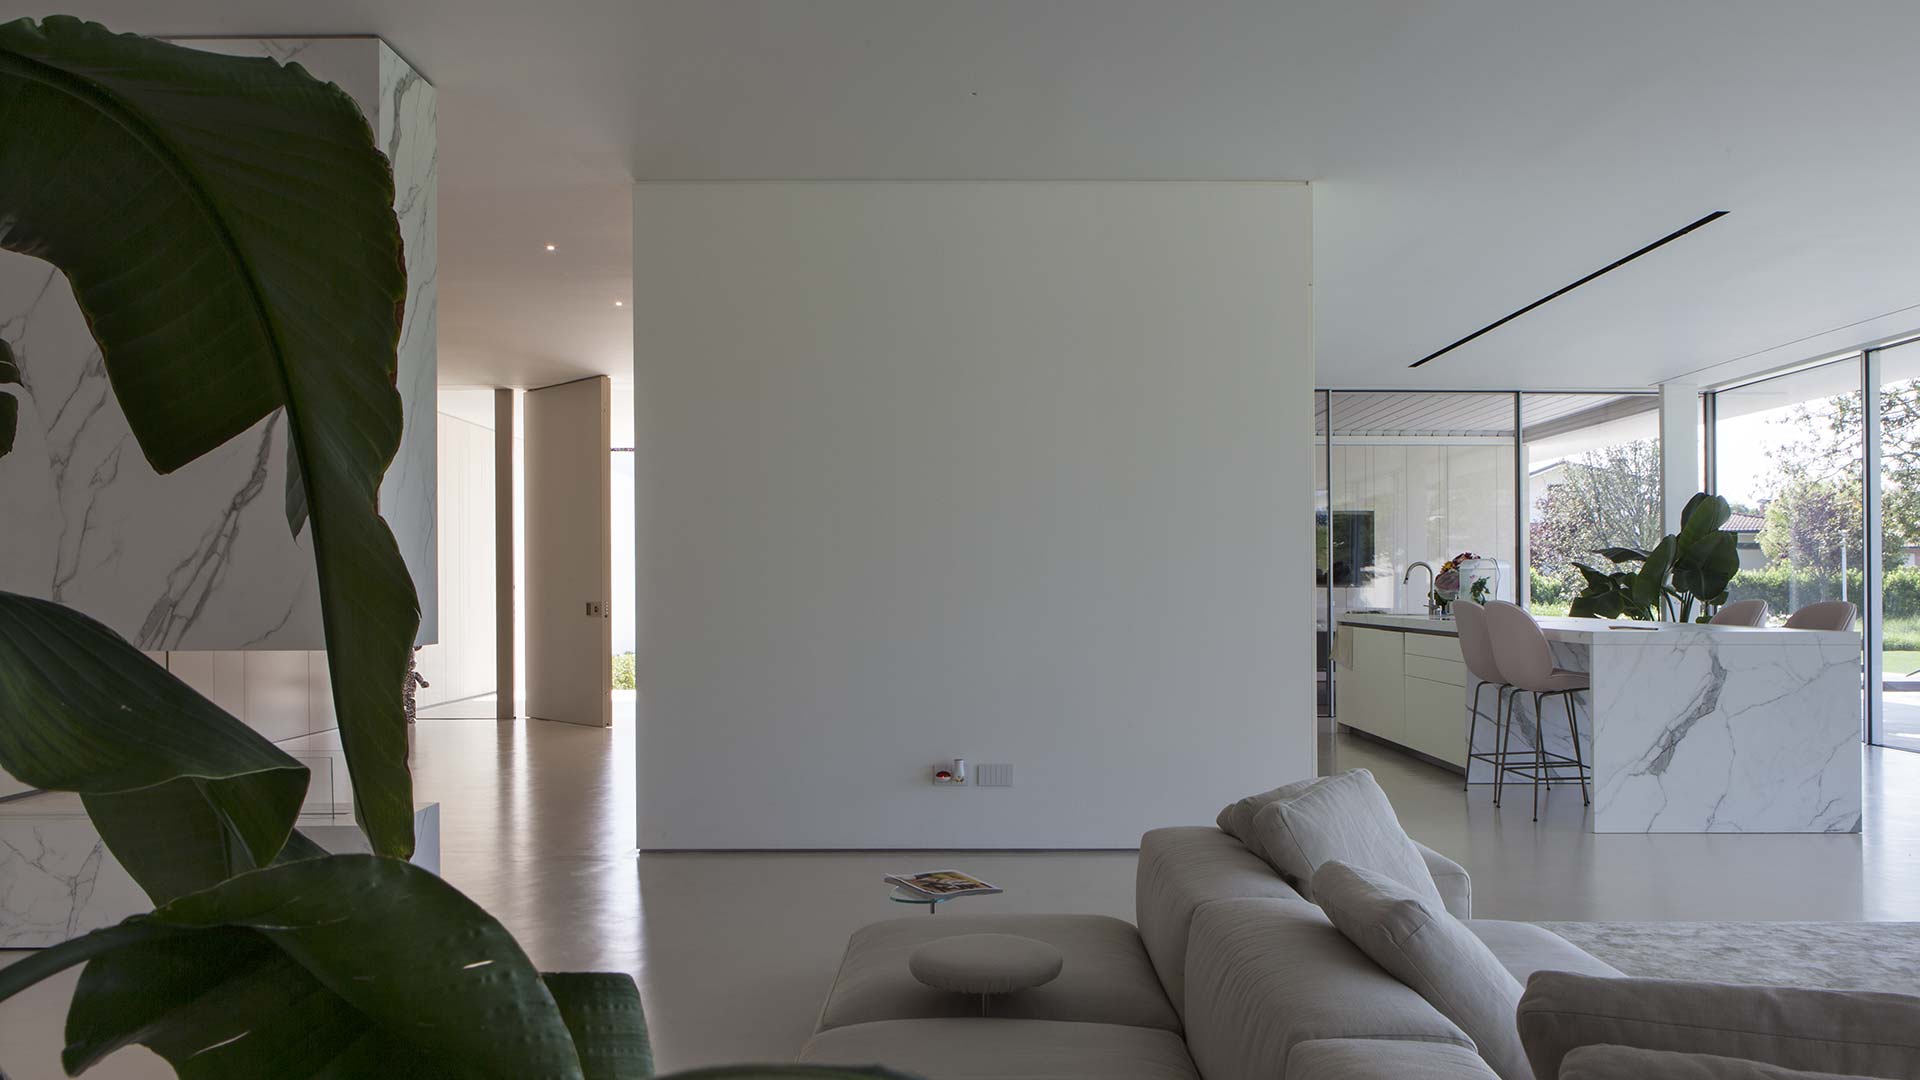 Progetto di design contemporaneo con porta d’Ingresso blindata a bilico ad Argenta – Villa privata - Oikos